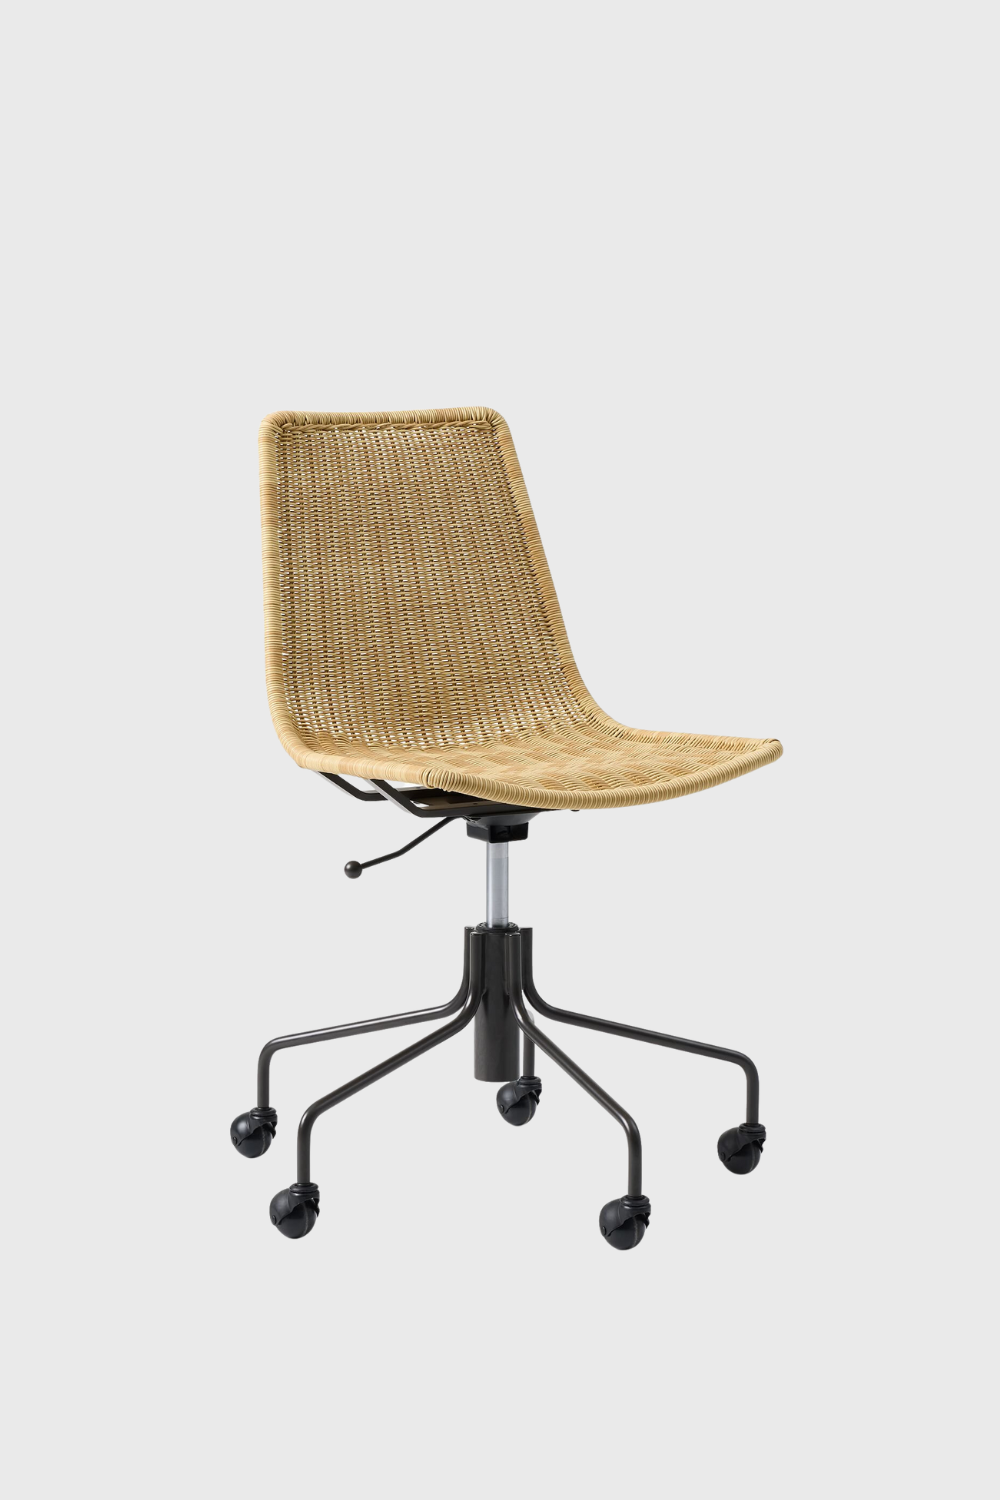 slope wicker swivel office chair